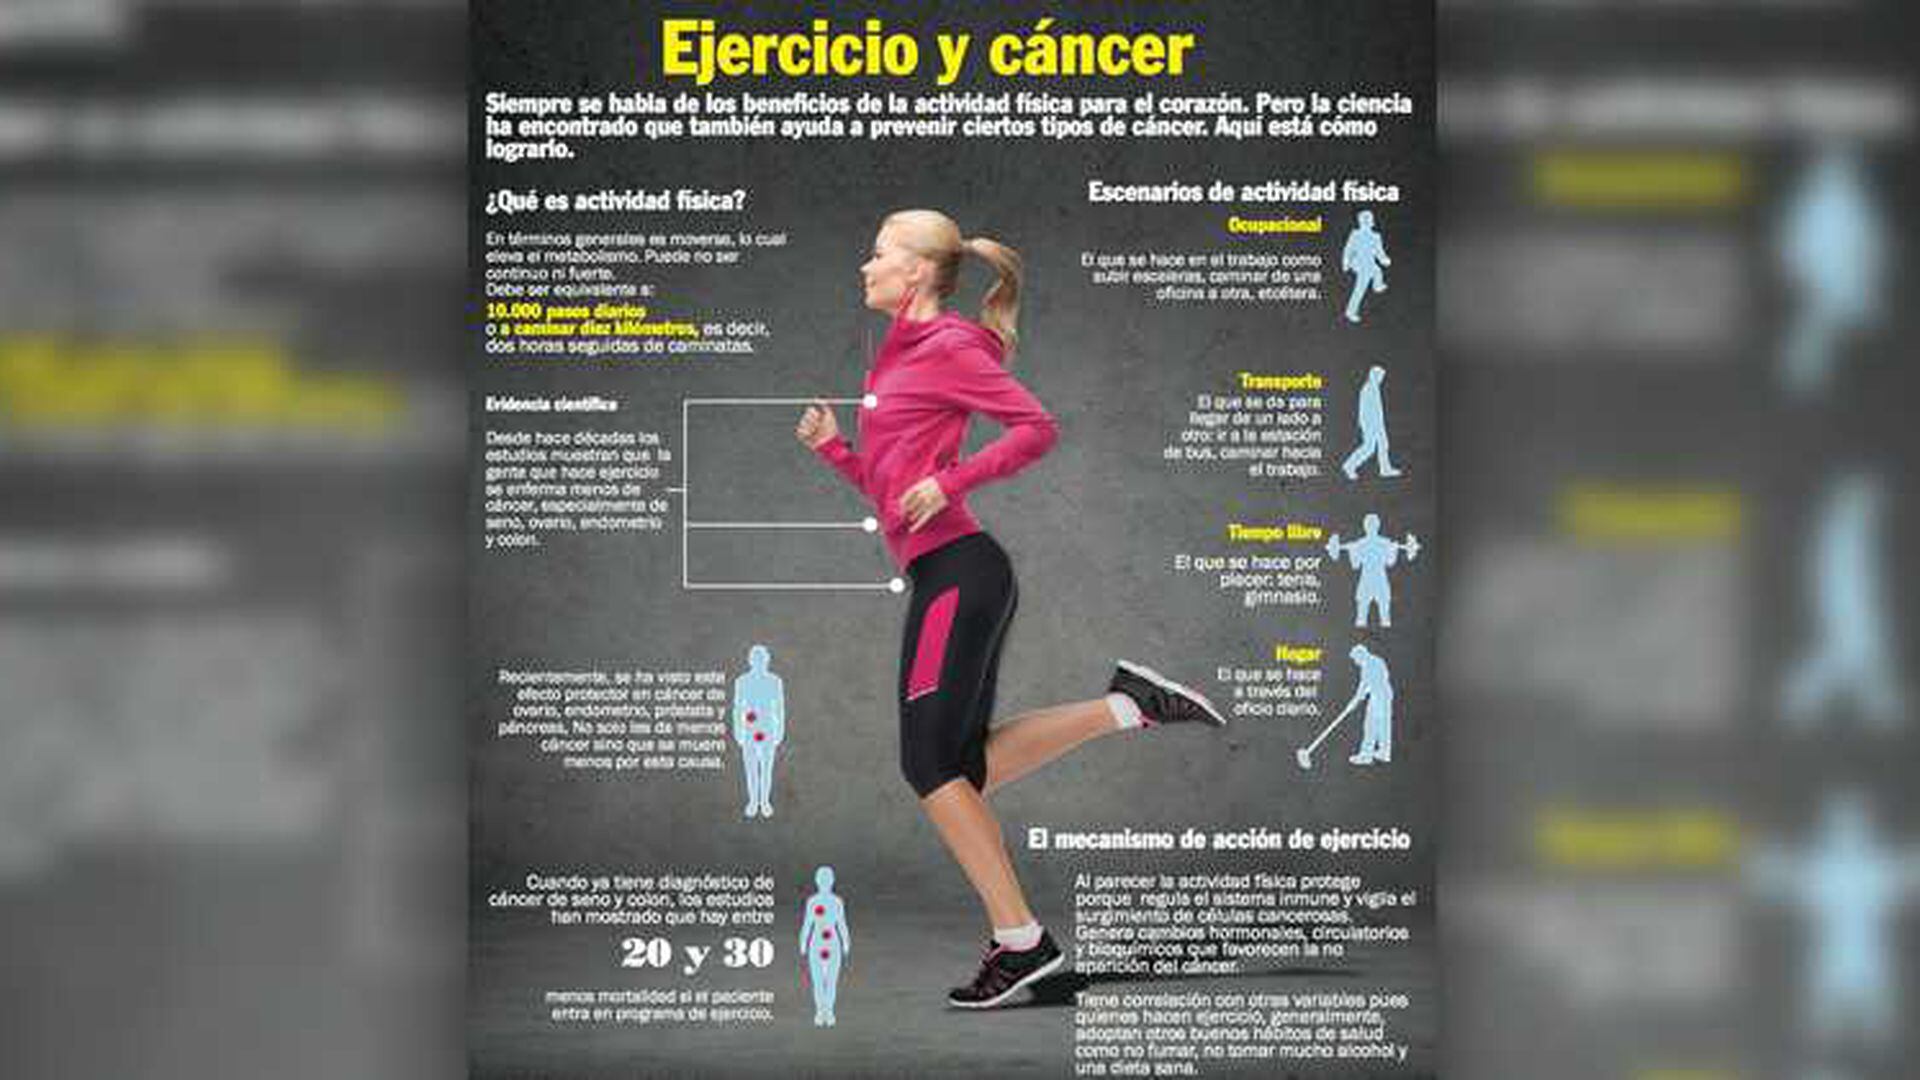 Ejercicio y cáncer: beneficios de la actividad física